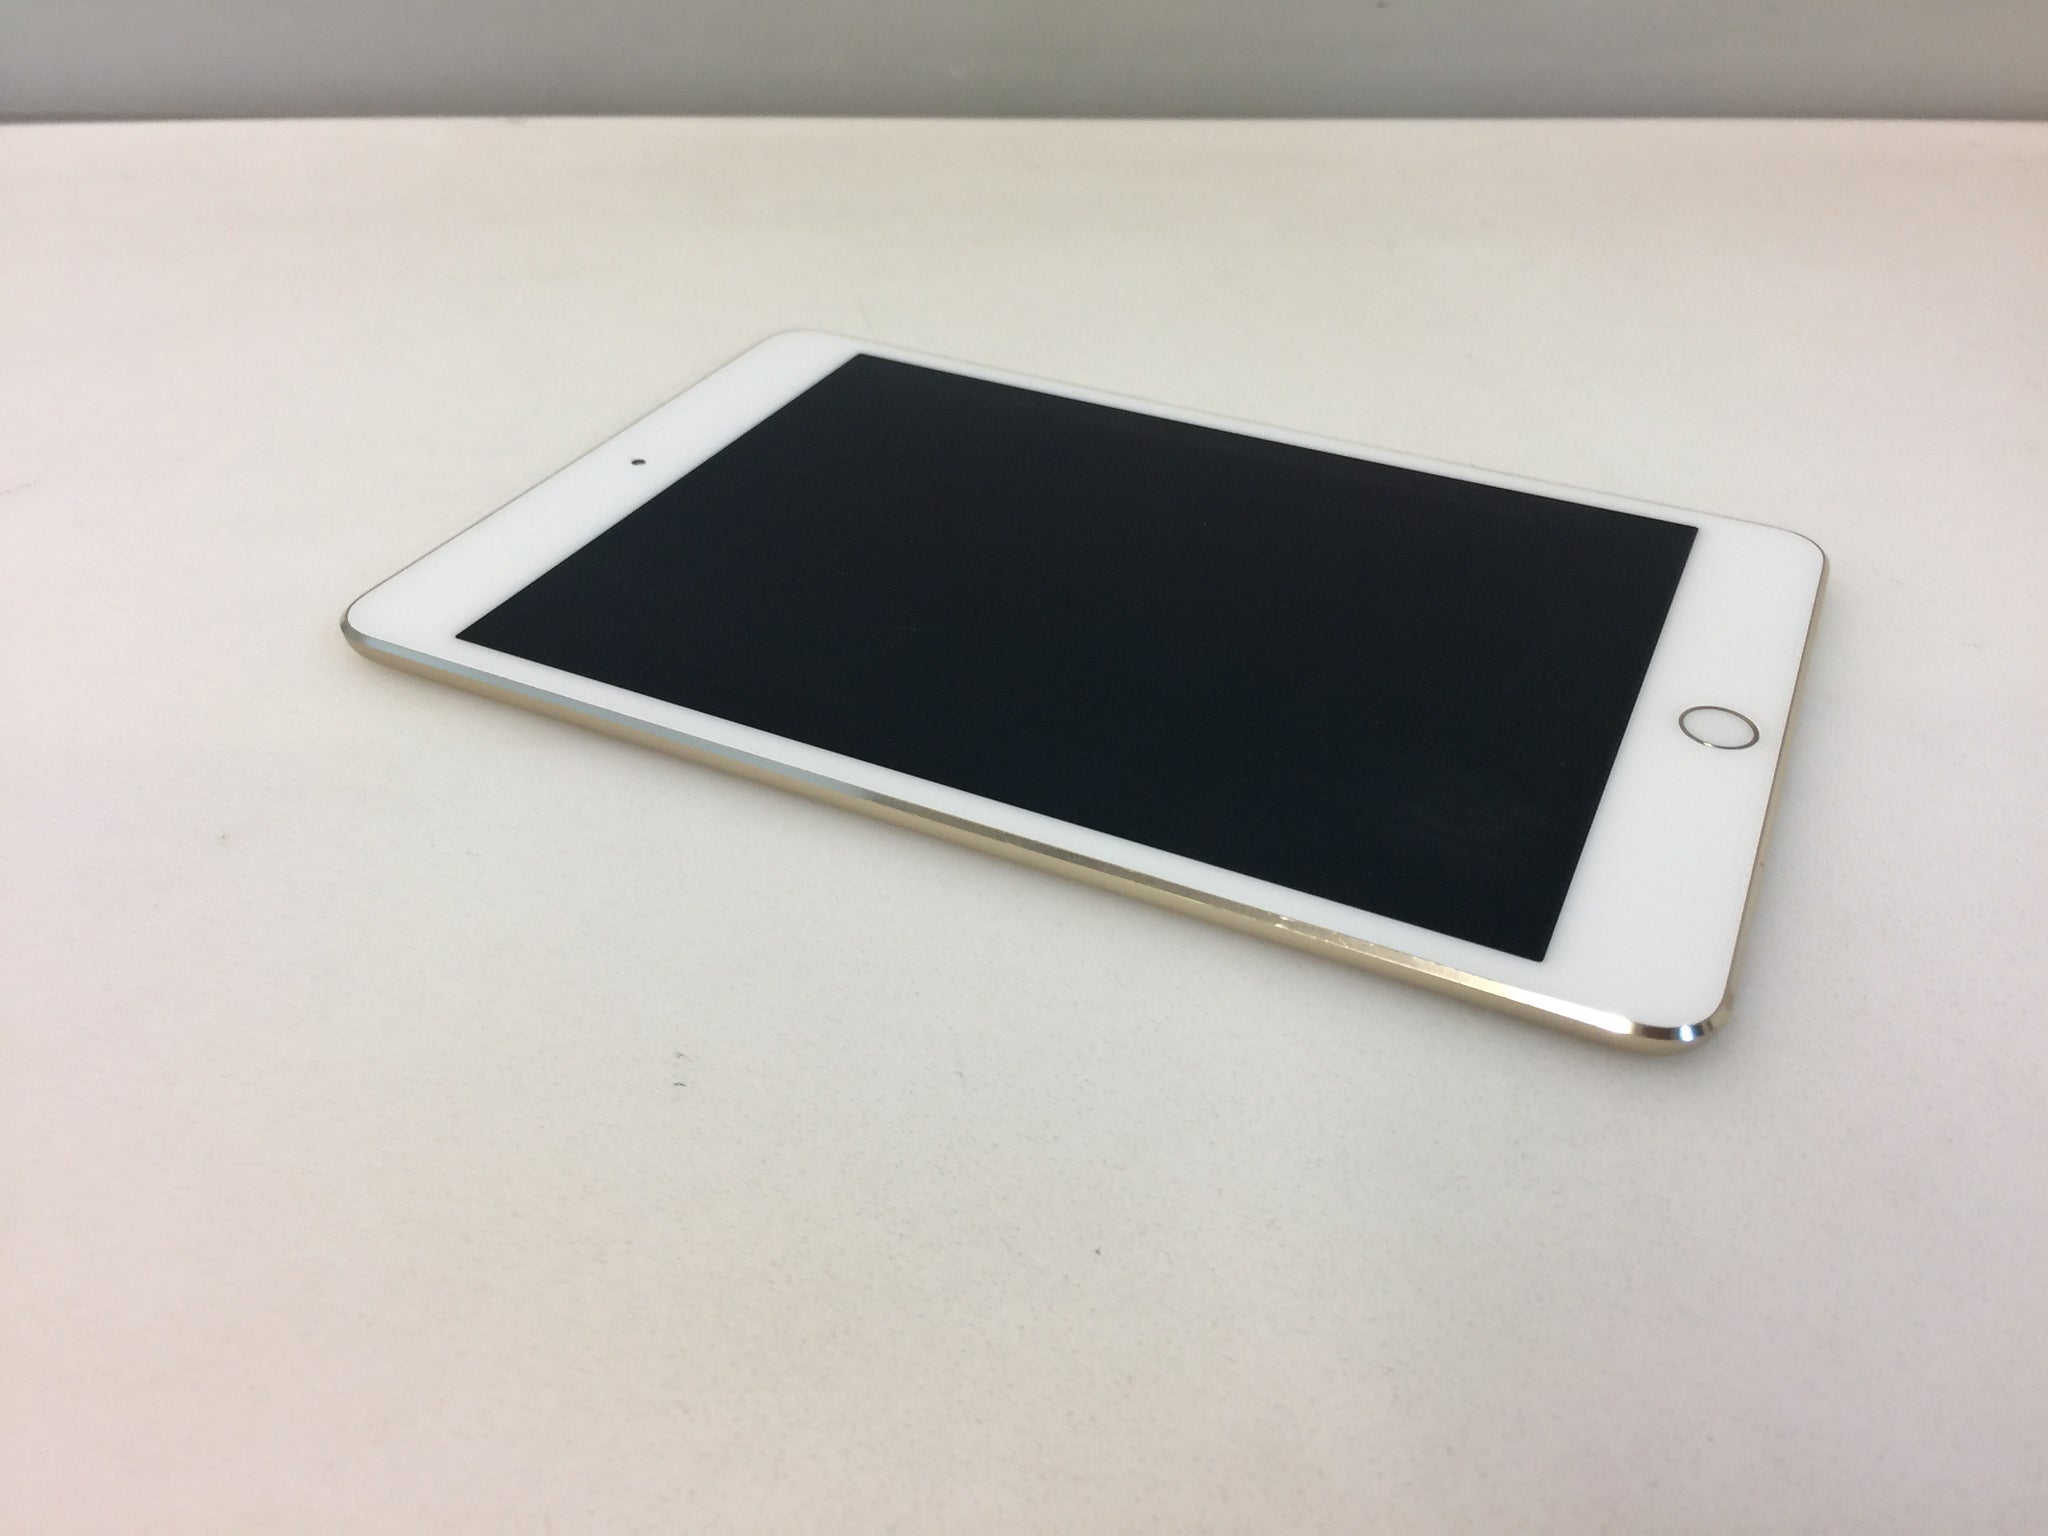 Apple iPad mini 4 A1538 16GB, Wi-Fi, 7.9in Tablet - Gold – NT